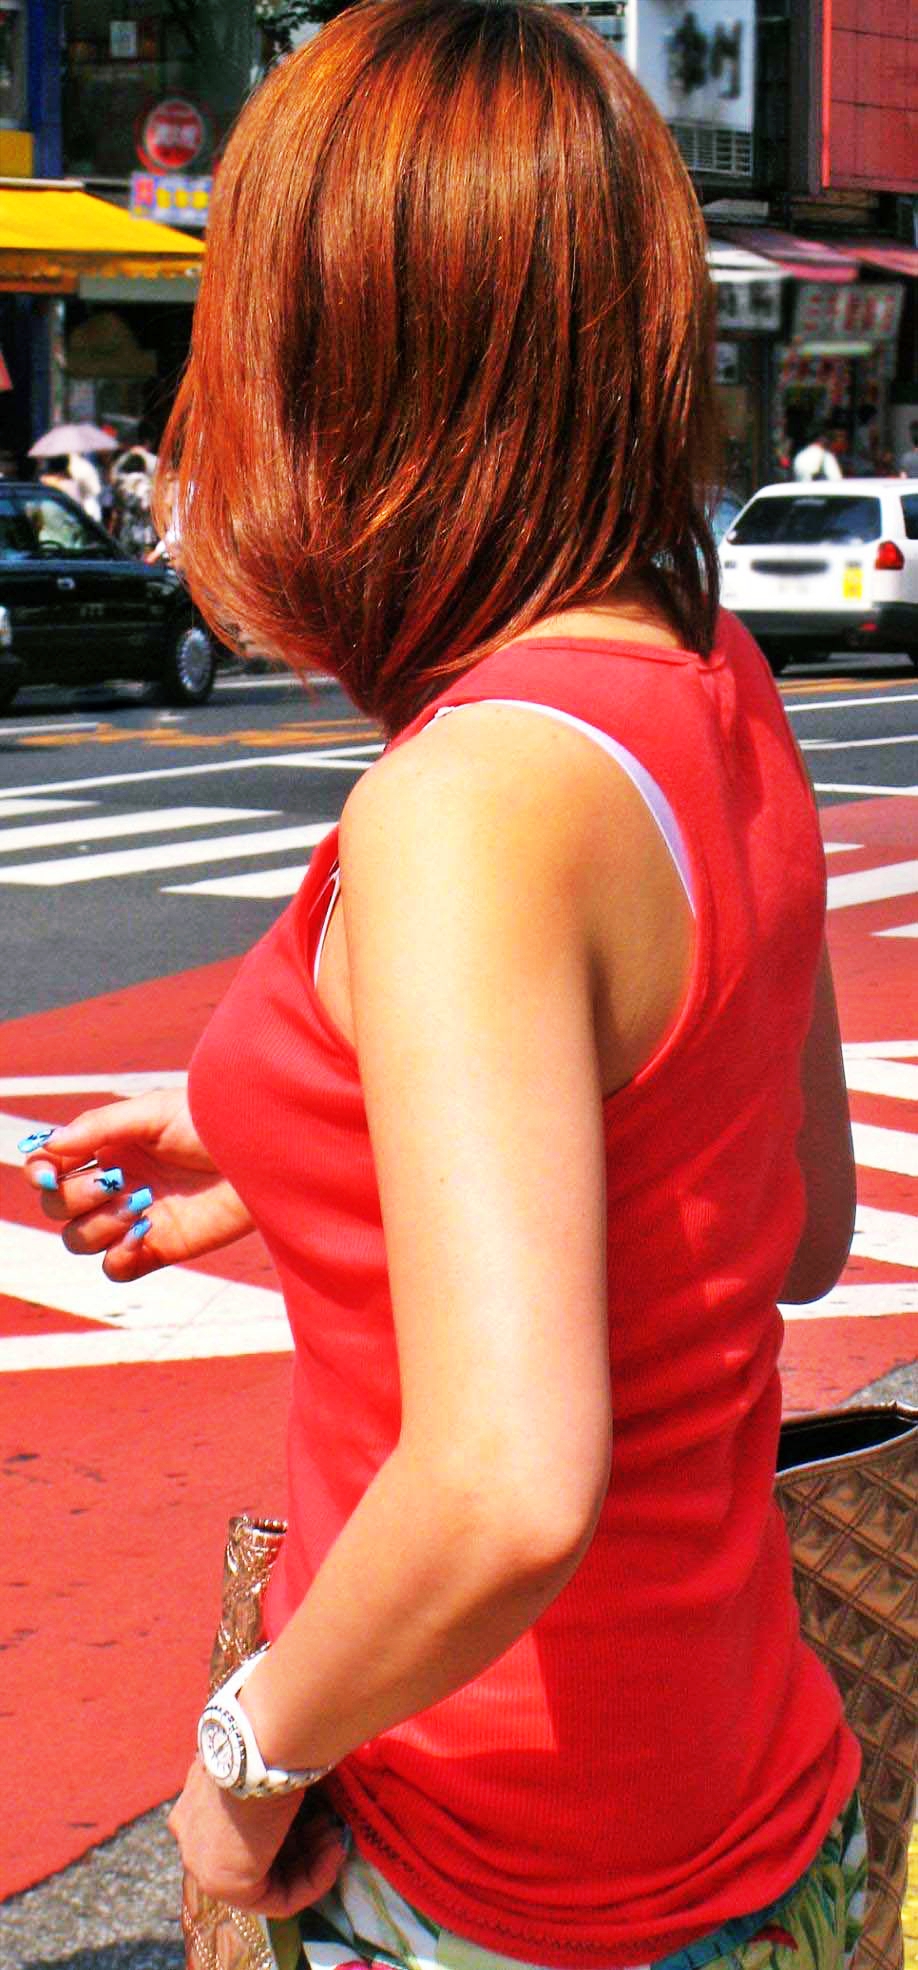 谷間みえっぱなしや着衣巨乳がエッチな女子の街撮り素人エロ画像-039